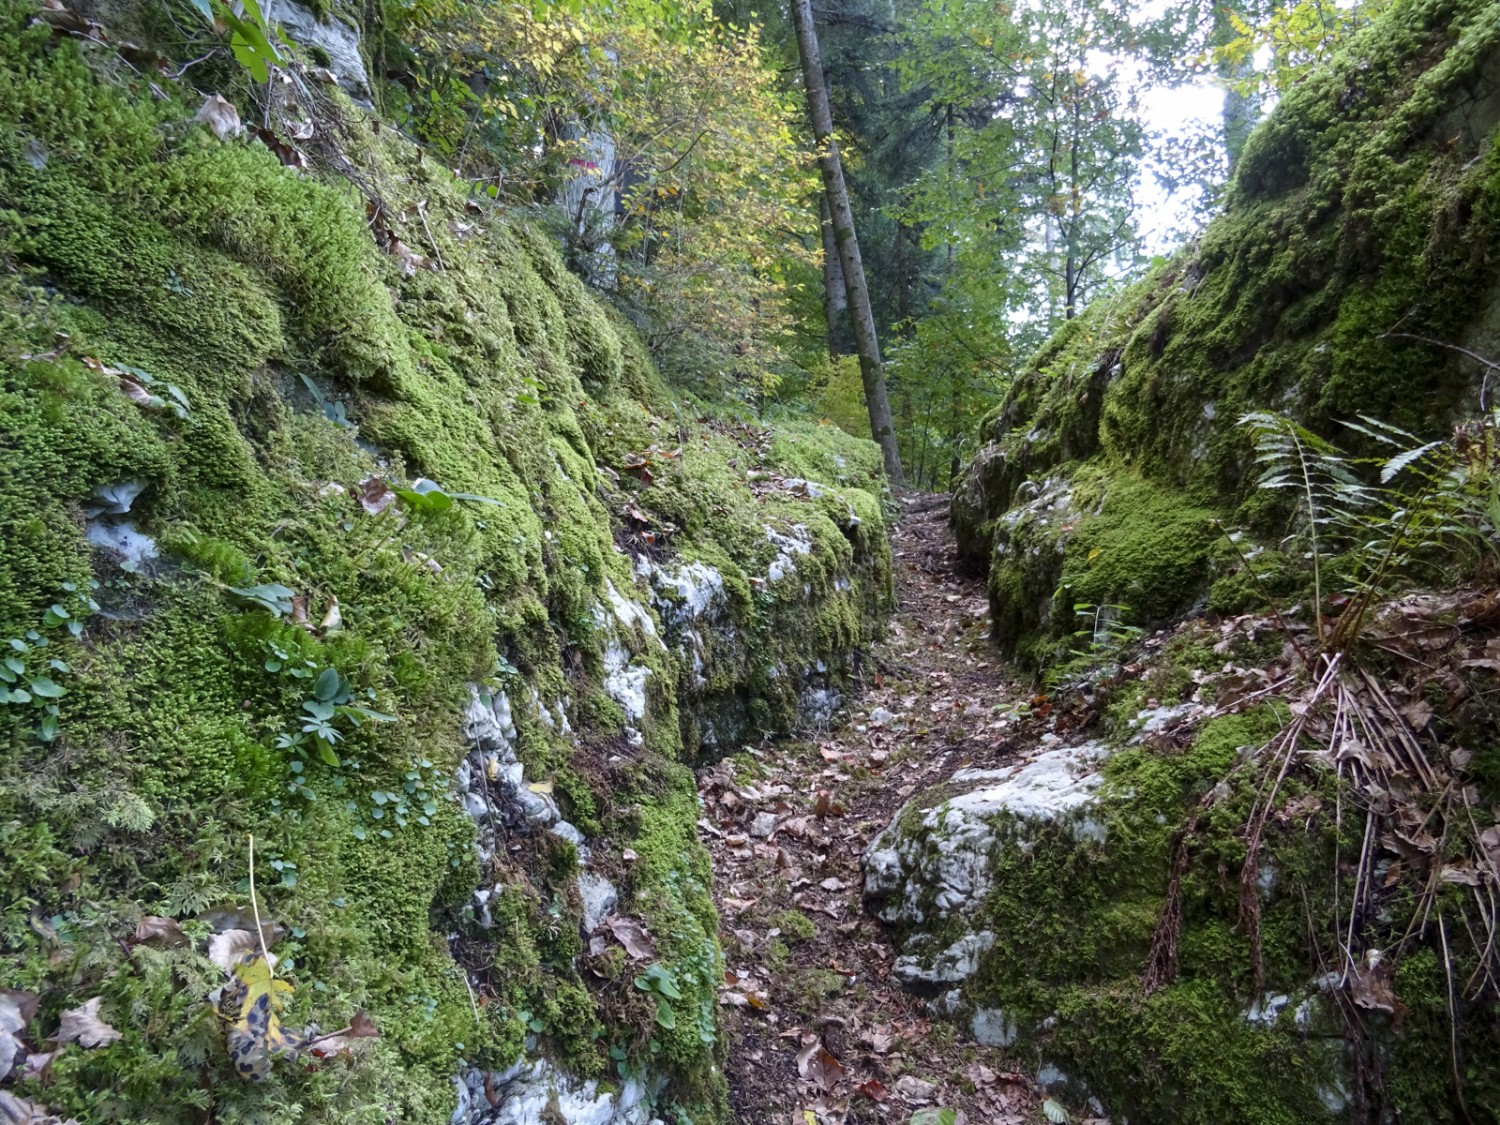 Typisch Jura: Ein schmaler Pfad schlängelt sich durch moosbedeckte Felsen. Bild: Sabine Joss